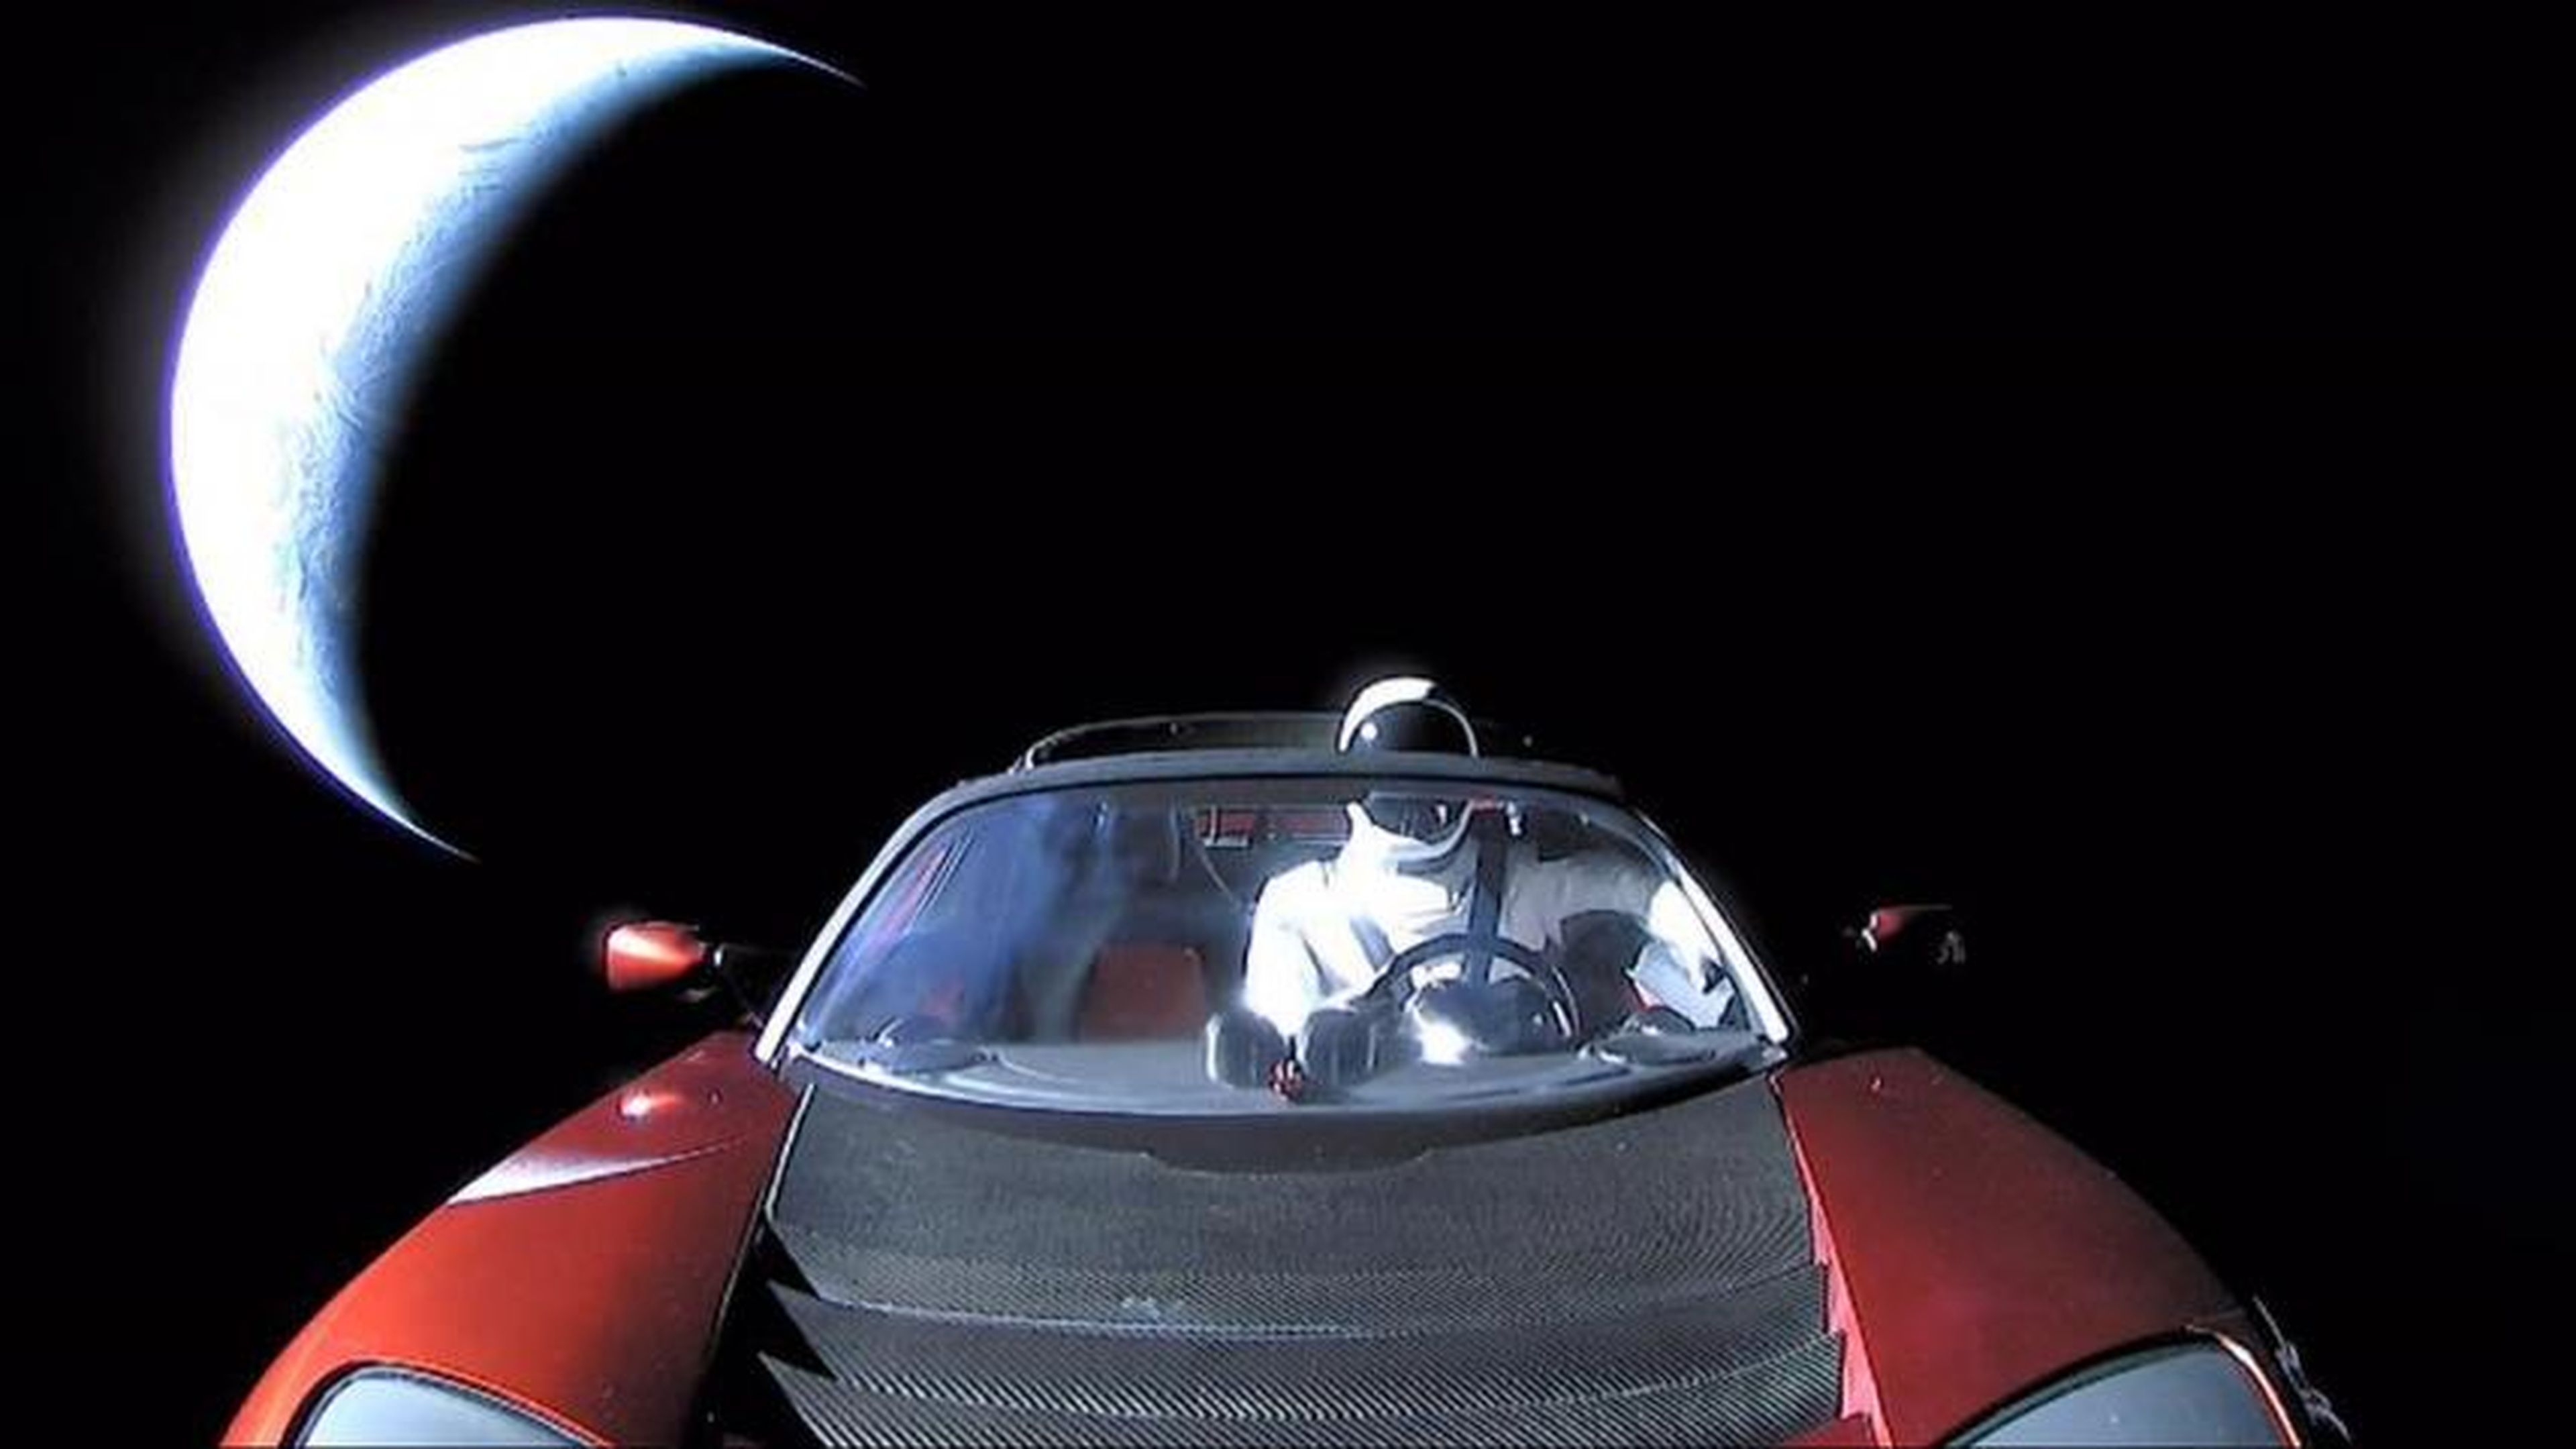 La última foto de "Starman" en el Tesla Roadster rojo de Elon Musk mientras vuela hacia la órbita de Marte. La Tierra es la media luna brillante vista en el fondo.